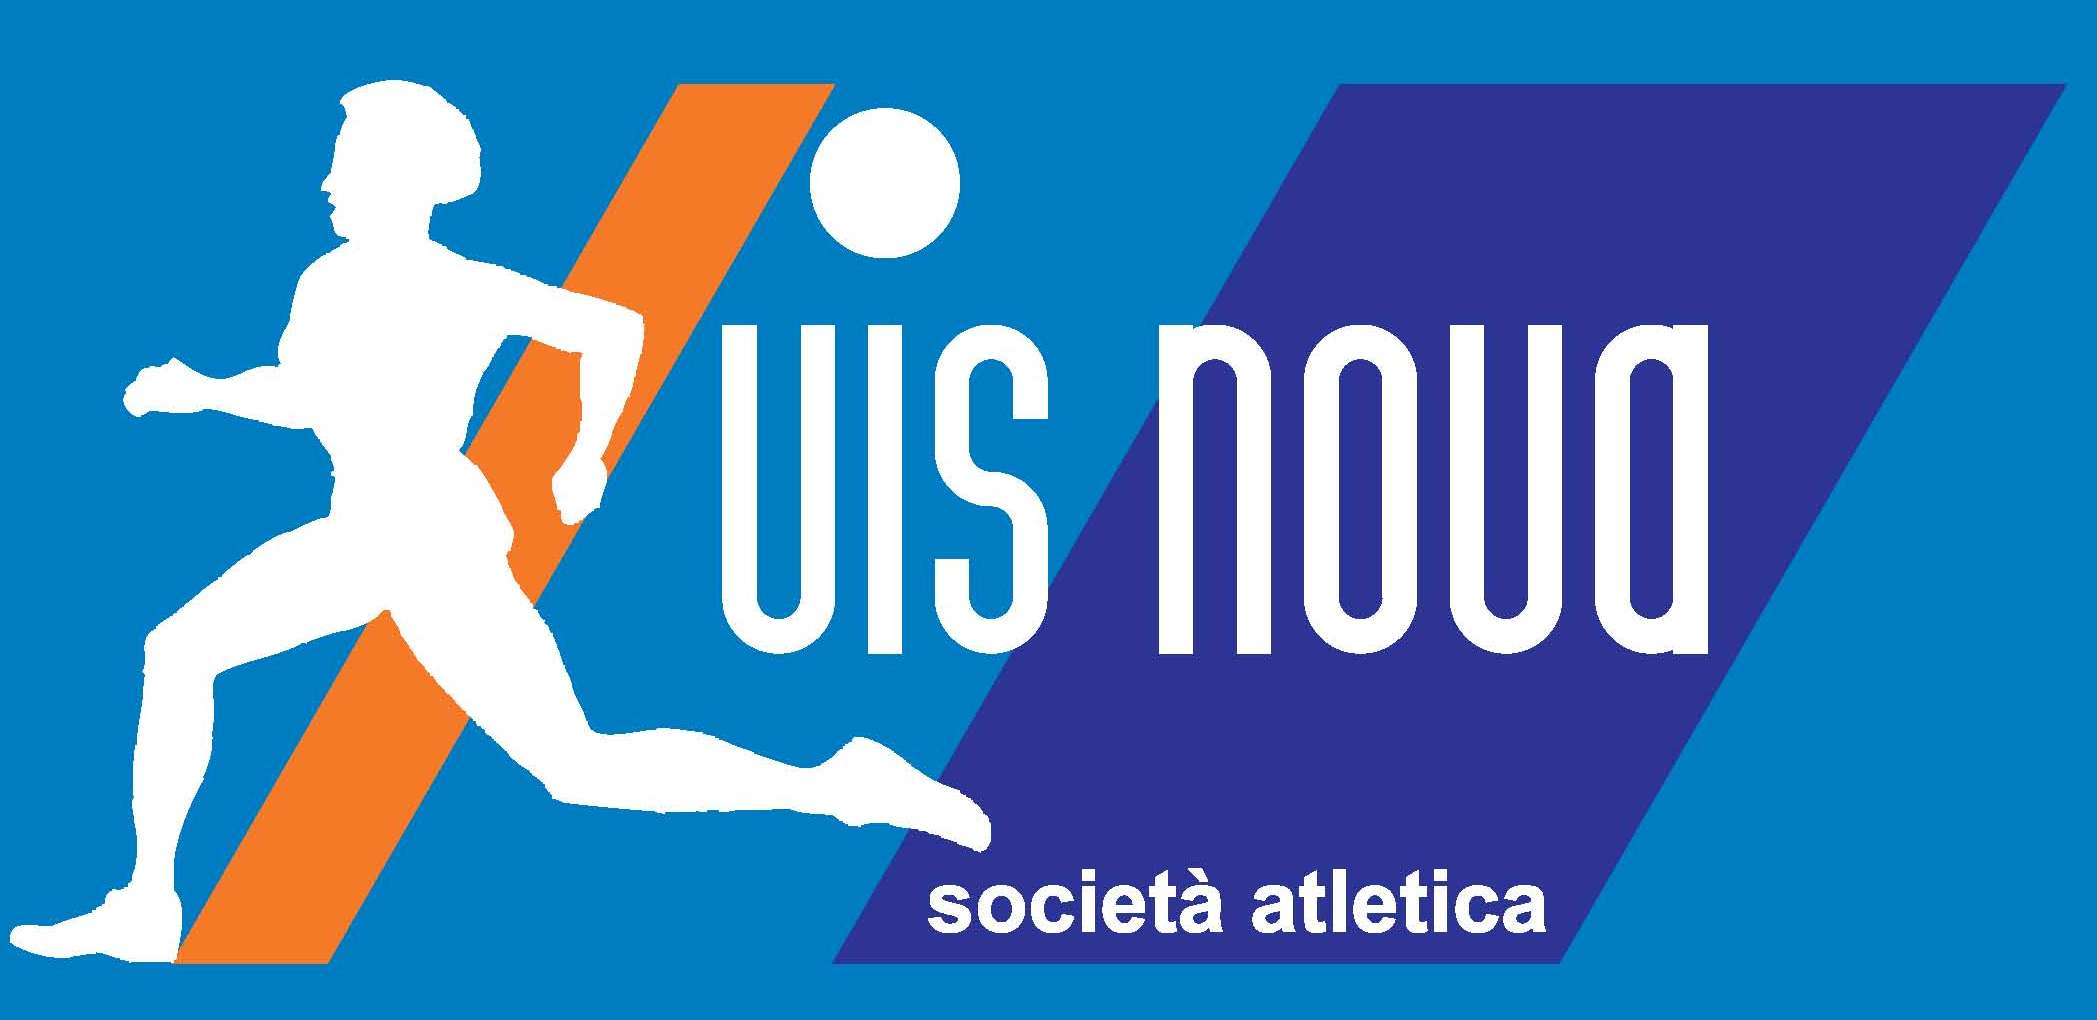 societa-atletica-vis-nova-logo.jpg